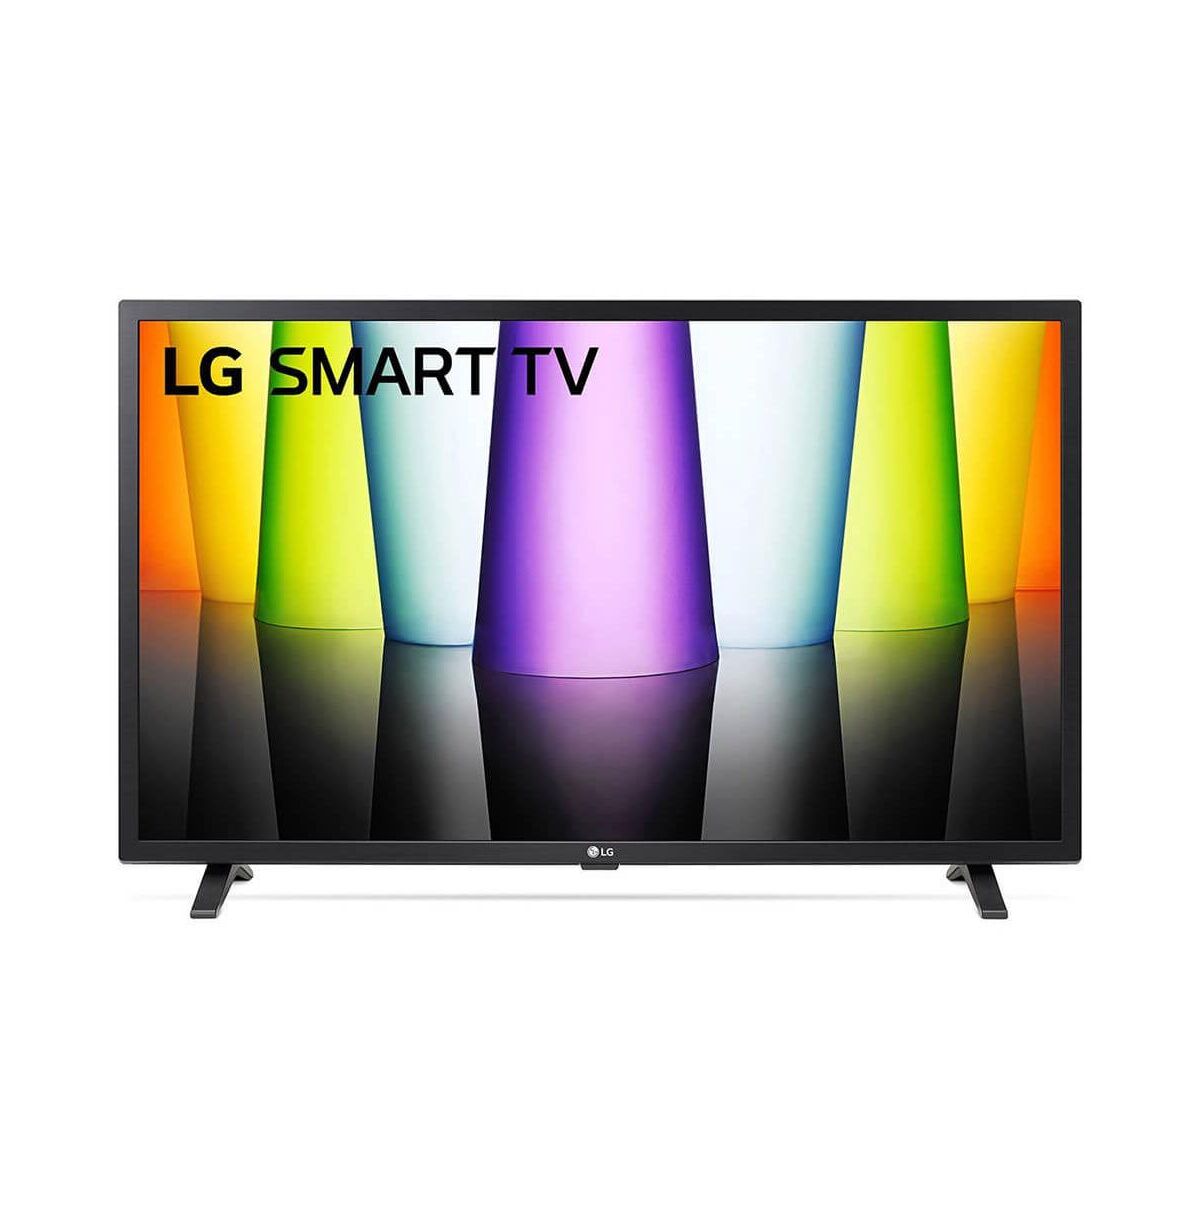 LG 32 inch LQ630B 720p Hdr Smart Led Hd Tv - Black